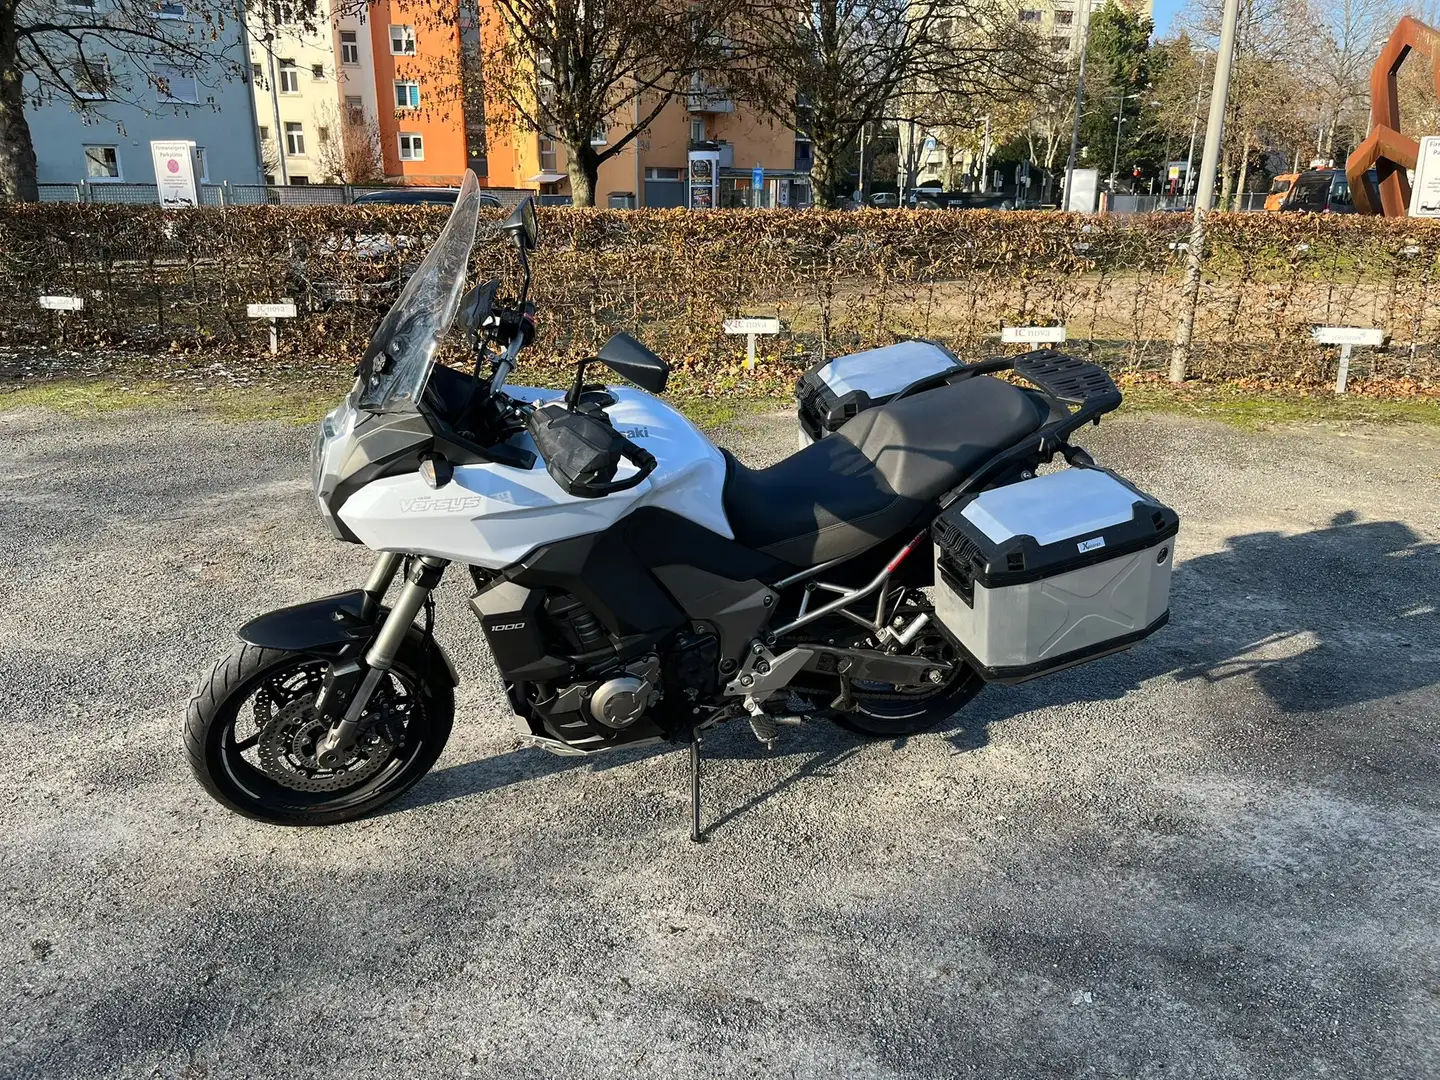 Kawasaki Versys 1000 Білий - 2